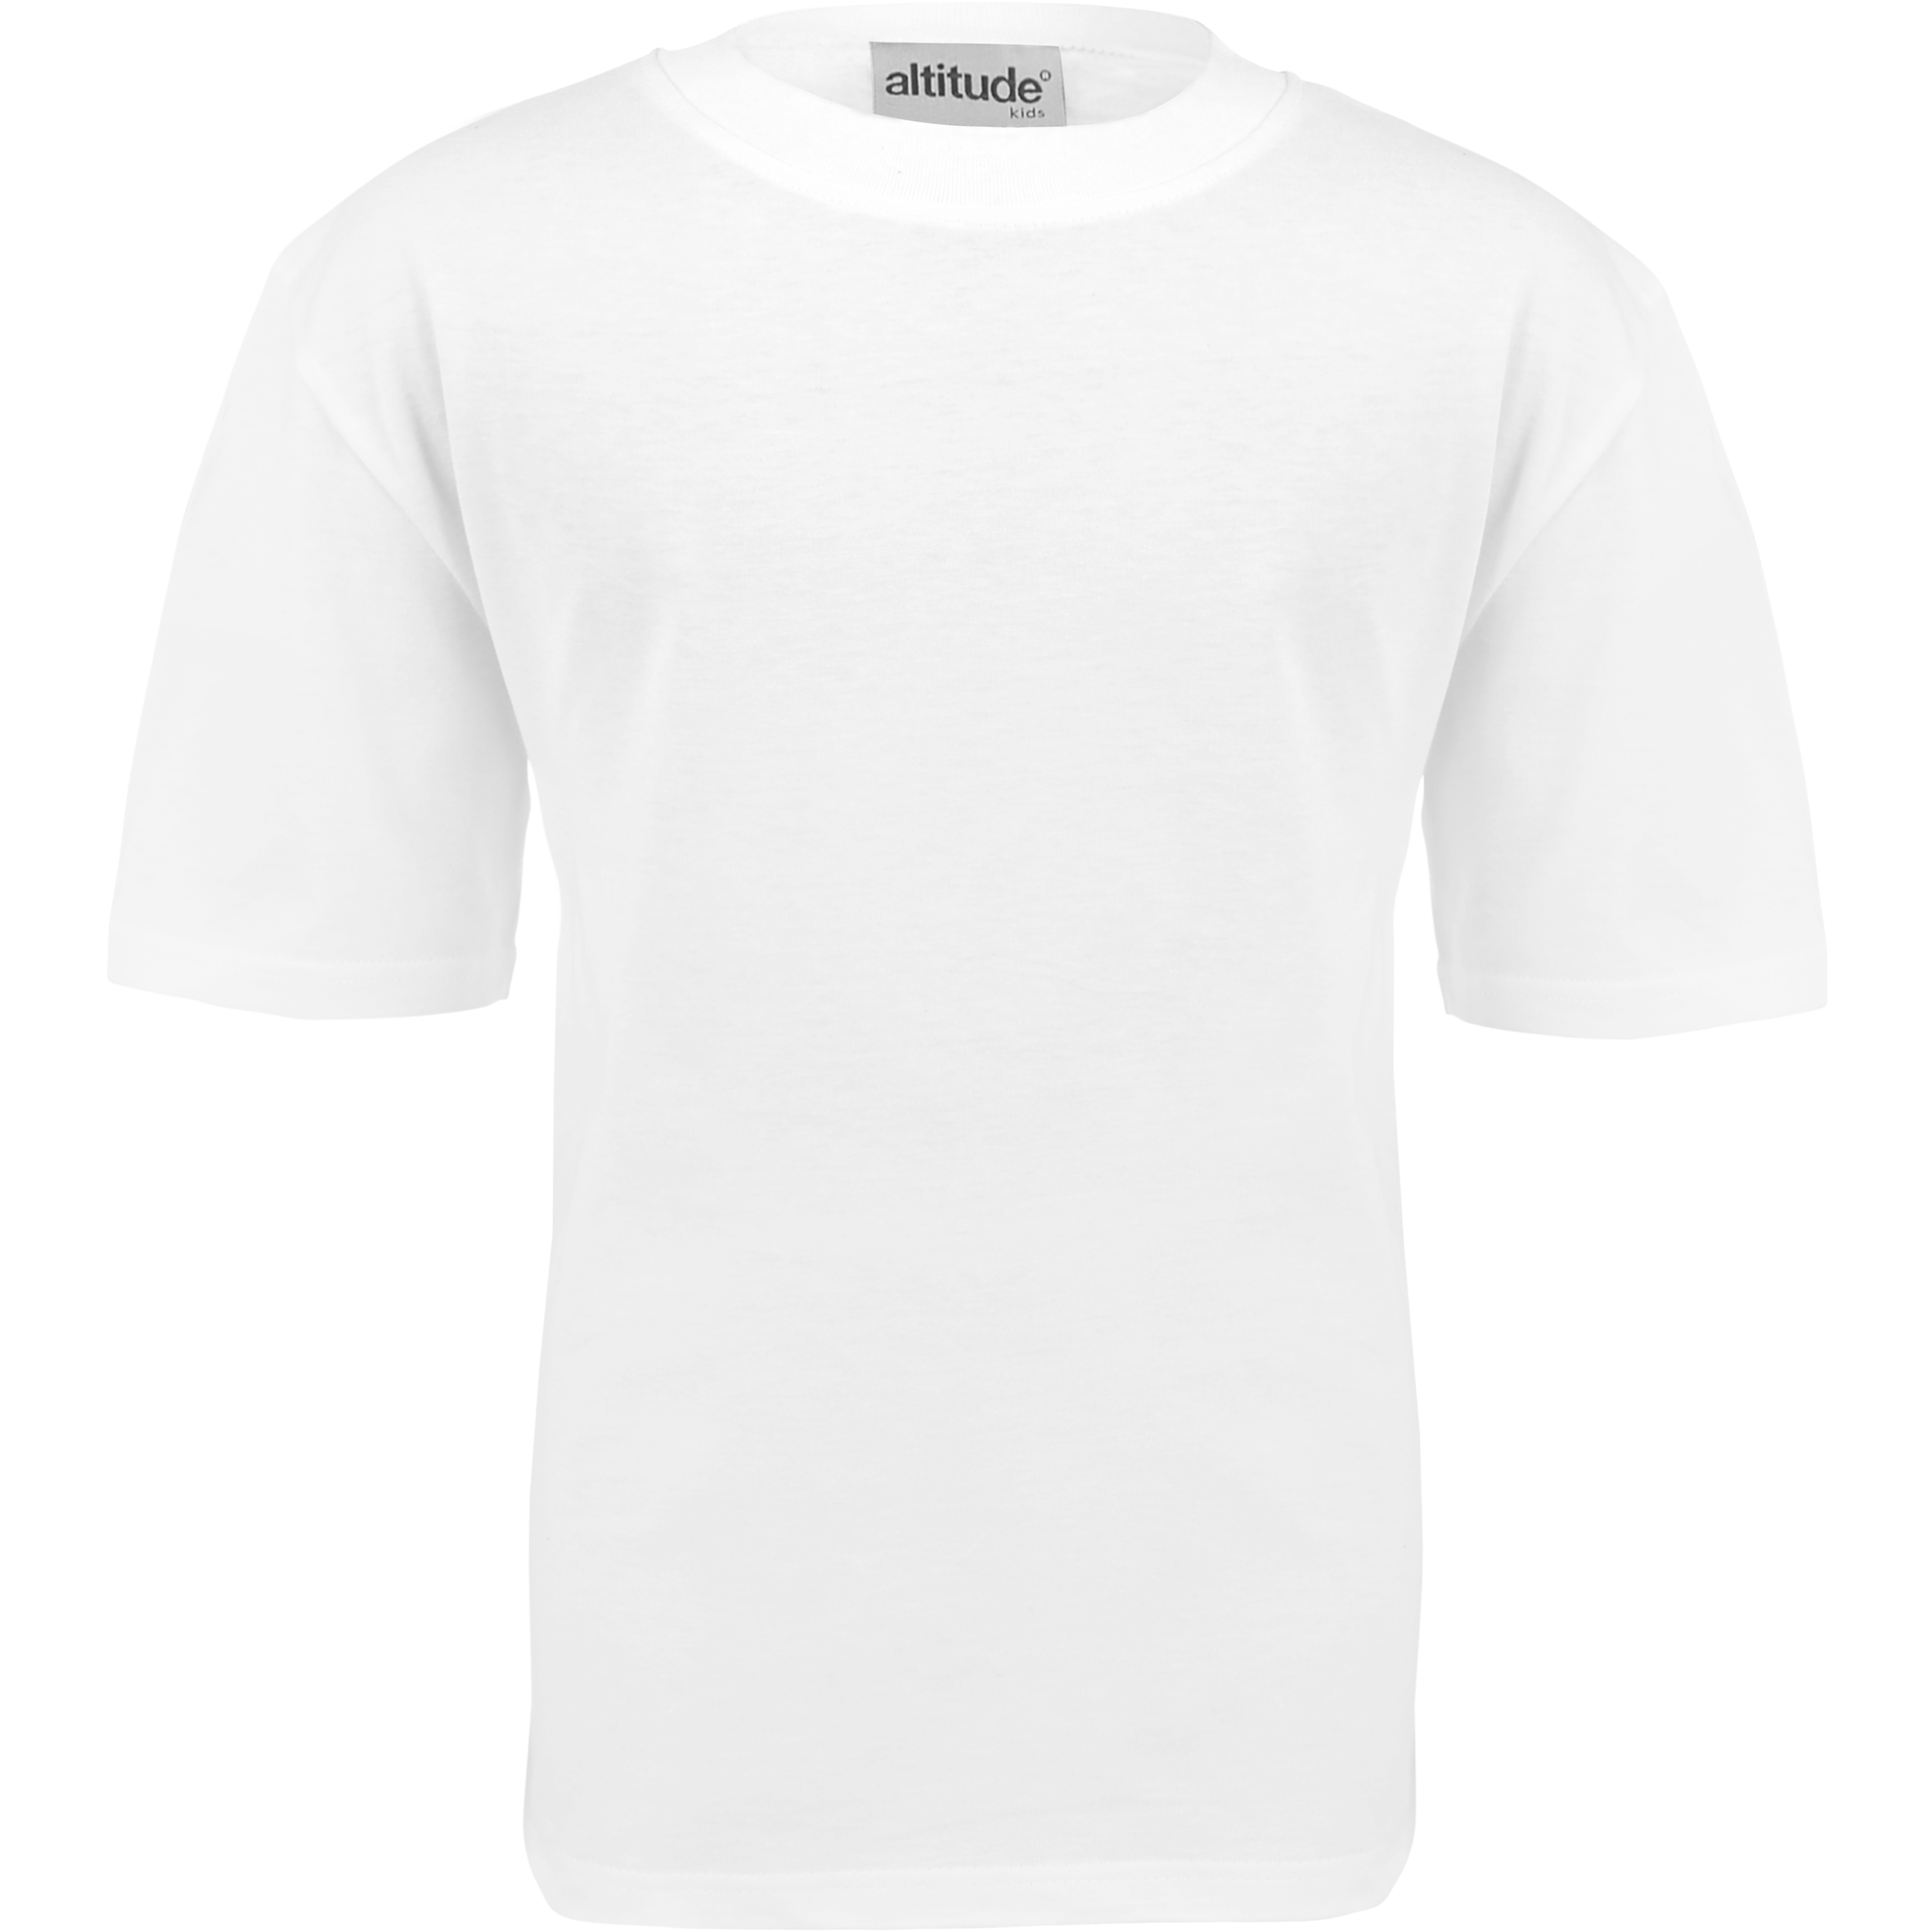 Kids Promo T-Shirt  - White